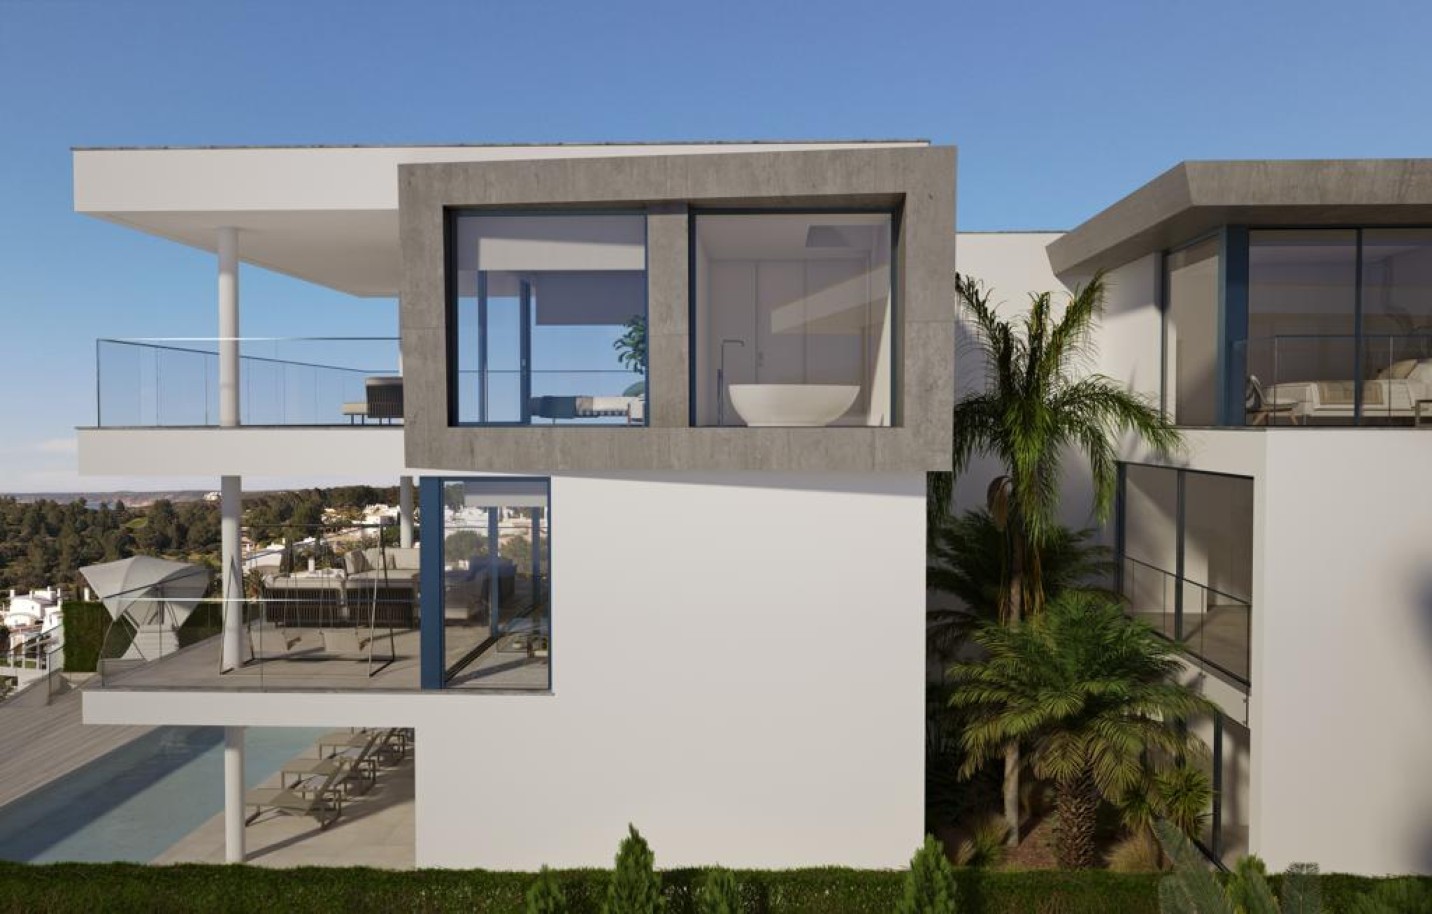 Terrain avec projet approuvé, à vendre, à Budens, Algarve_218101